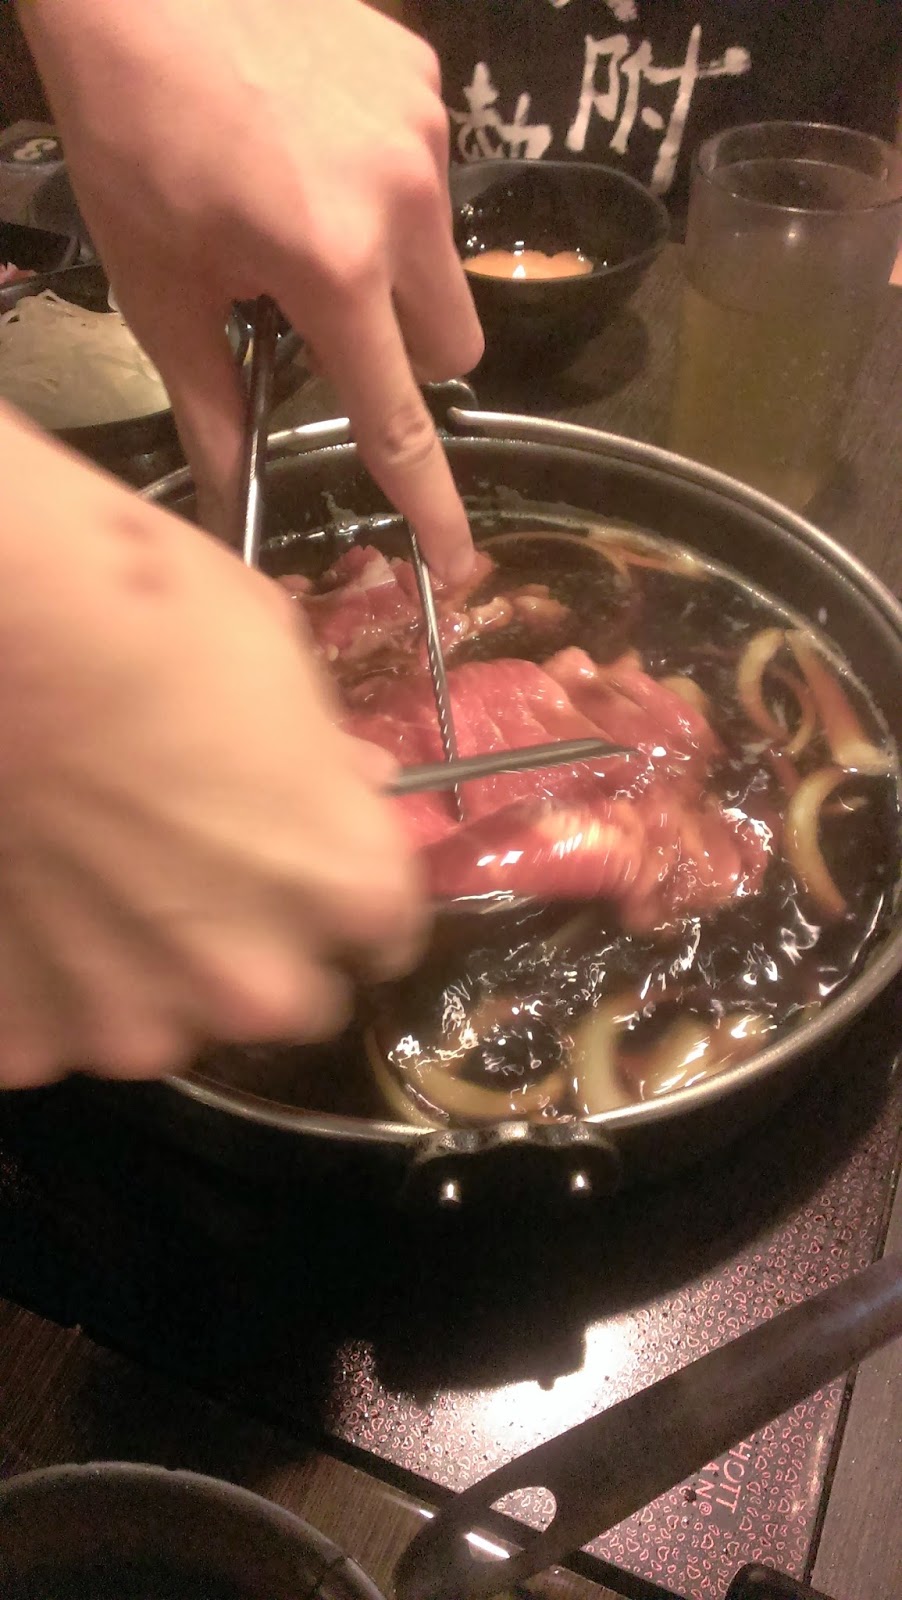 2014 11 09%2B17.21.27 1 - [食記] 潮肉壽喜燒 - 平價多樣的壽喜燒吃到飽